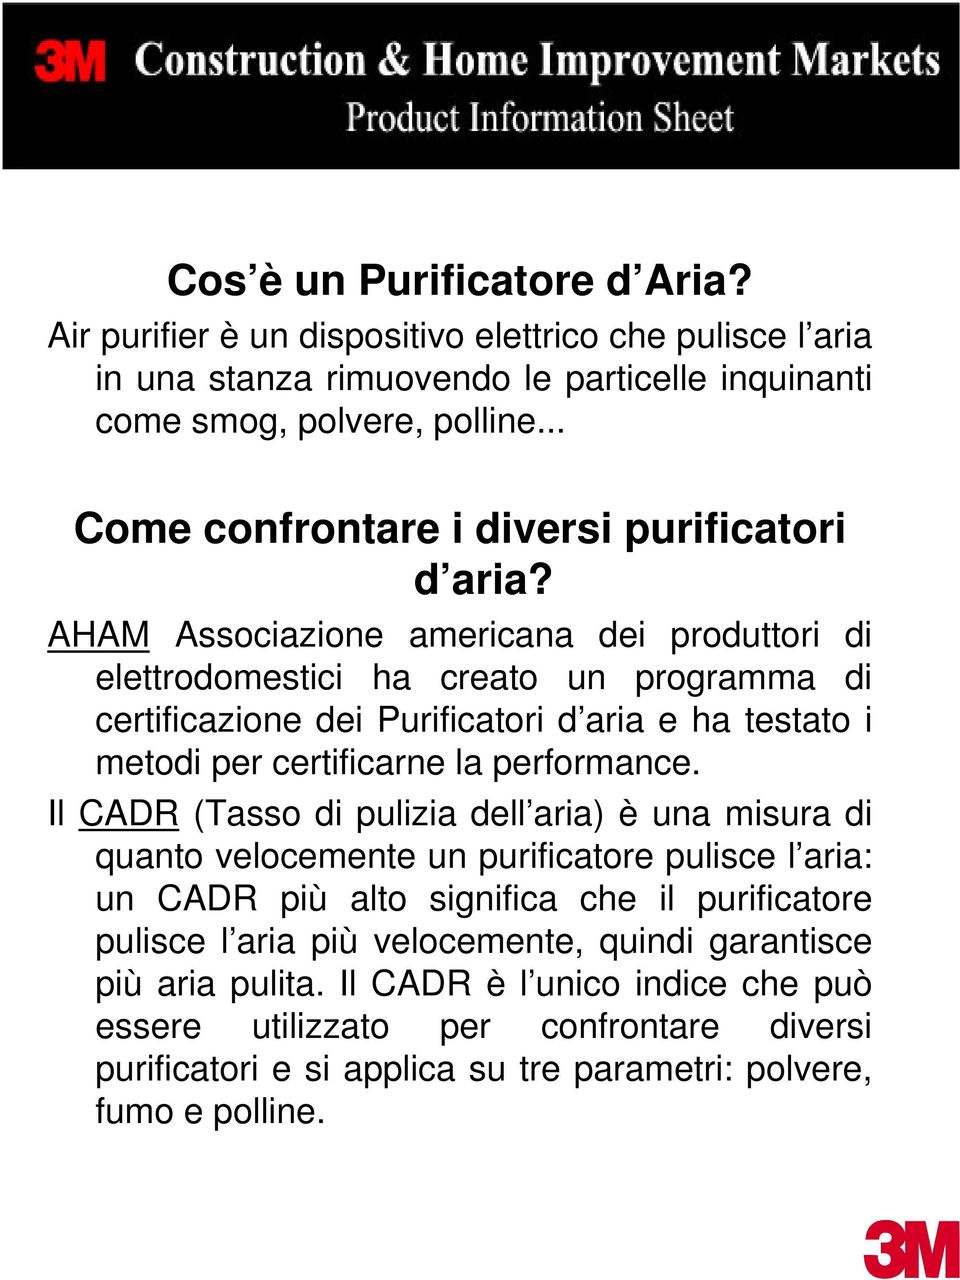 AHAM Associazione americana dei produttori di elettrodomestici ha creato un programma di certificazione dei Purificatori d aria e ha testato i metodi per certificarne la performance.